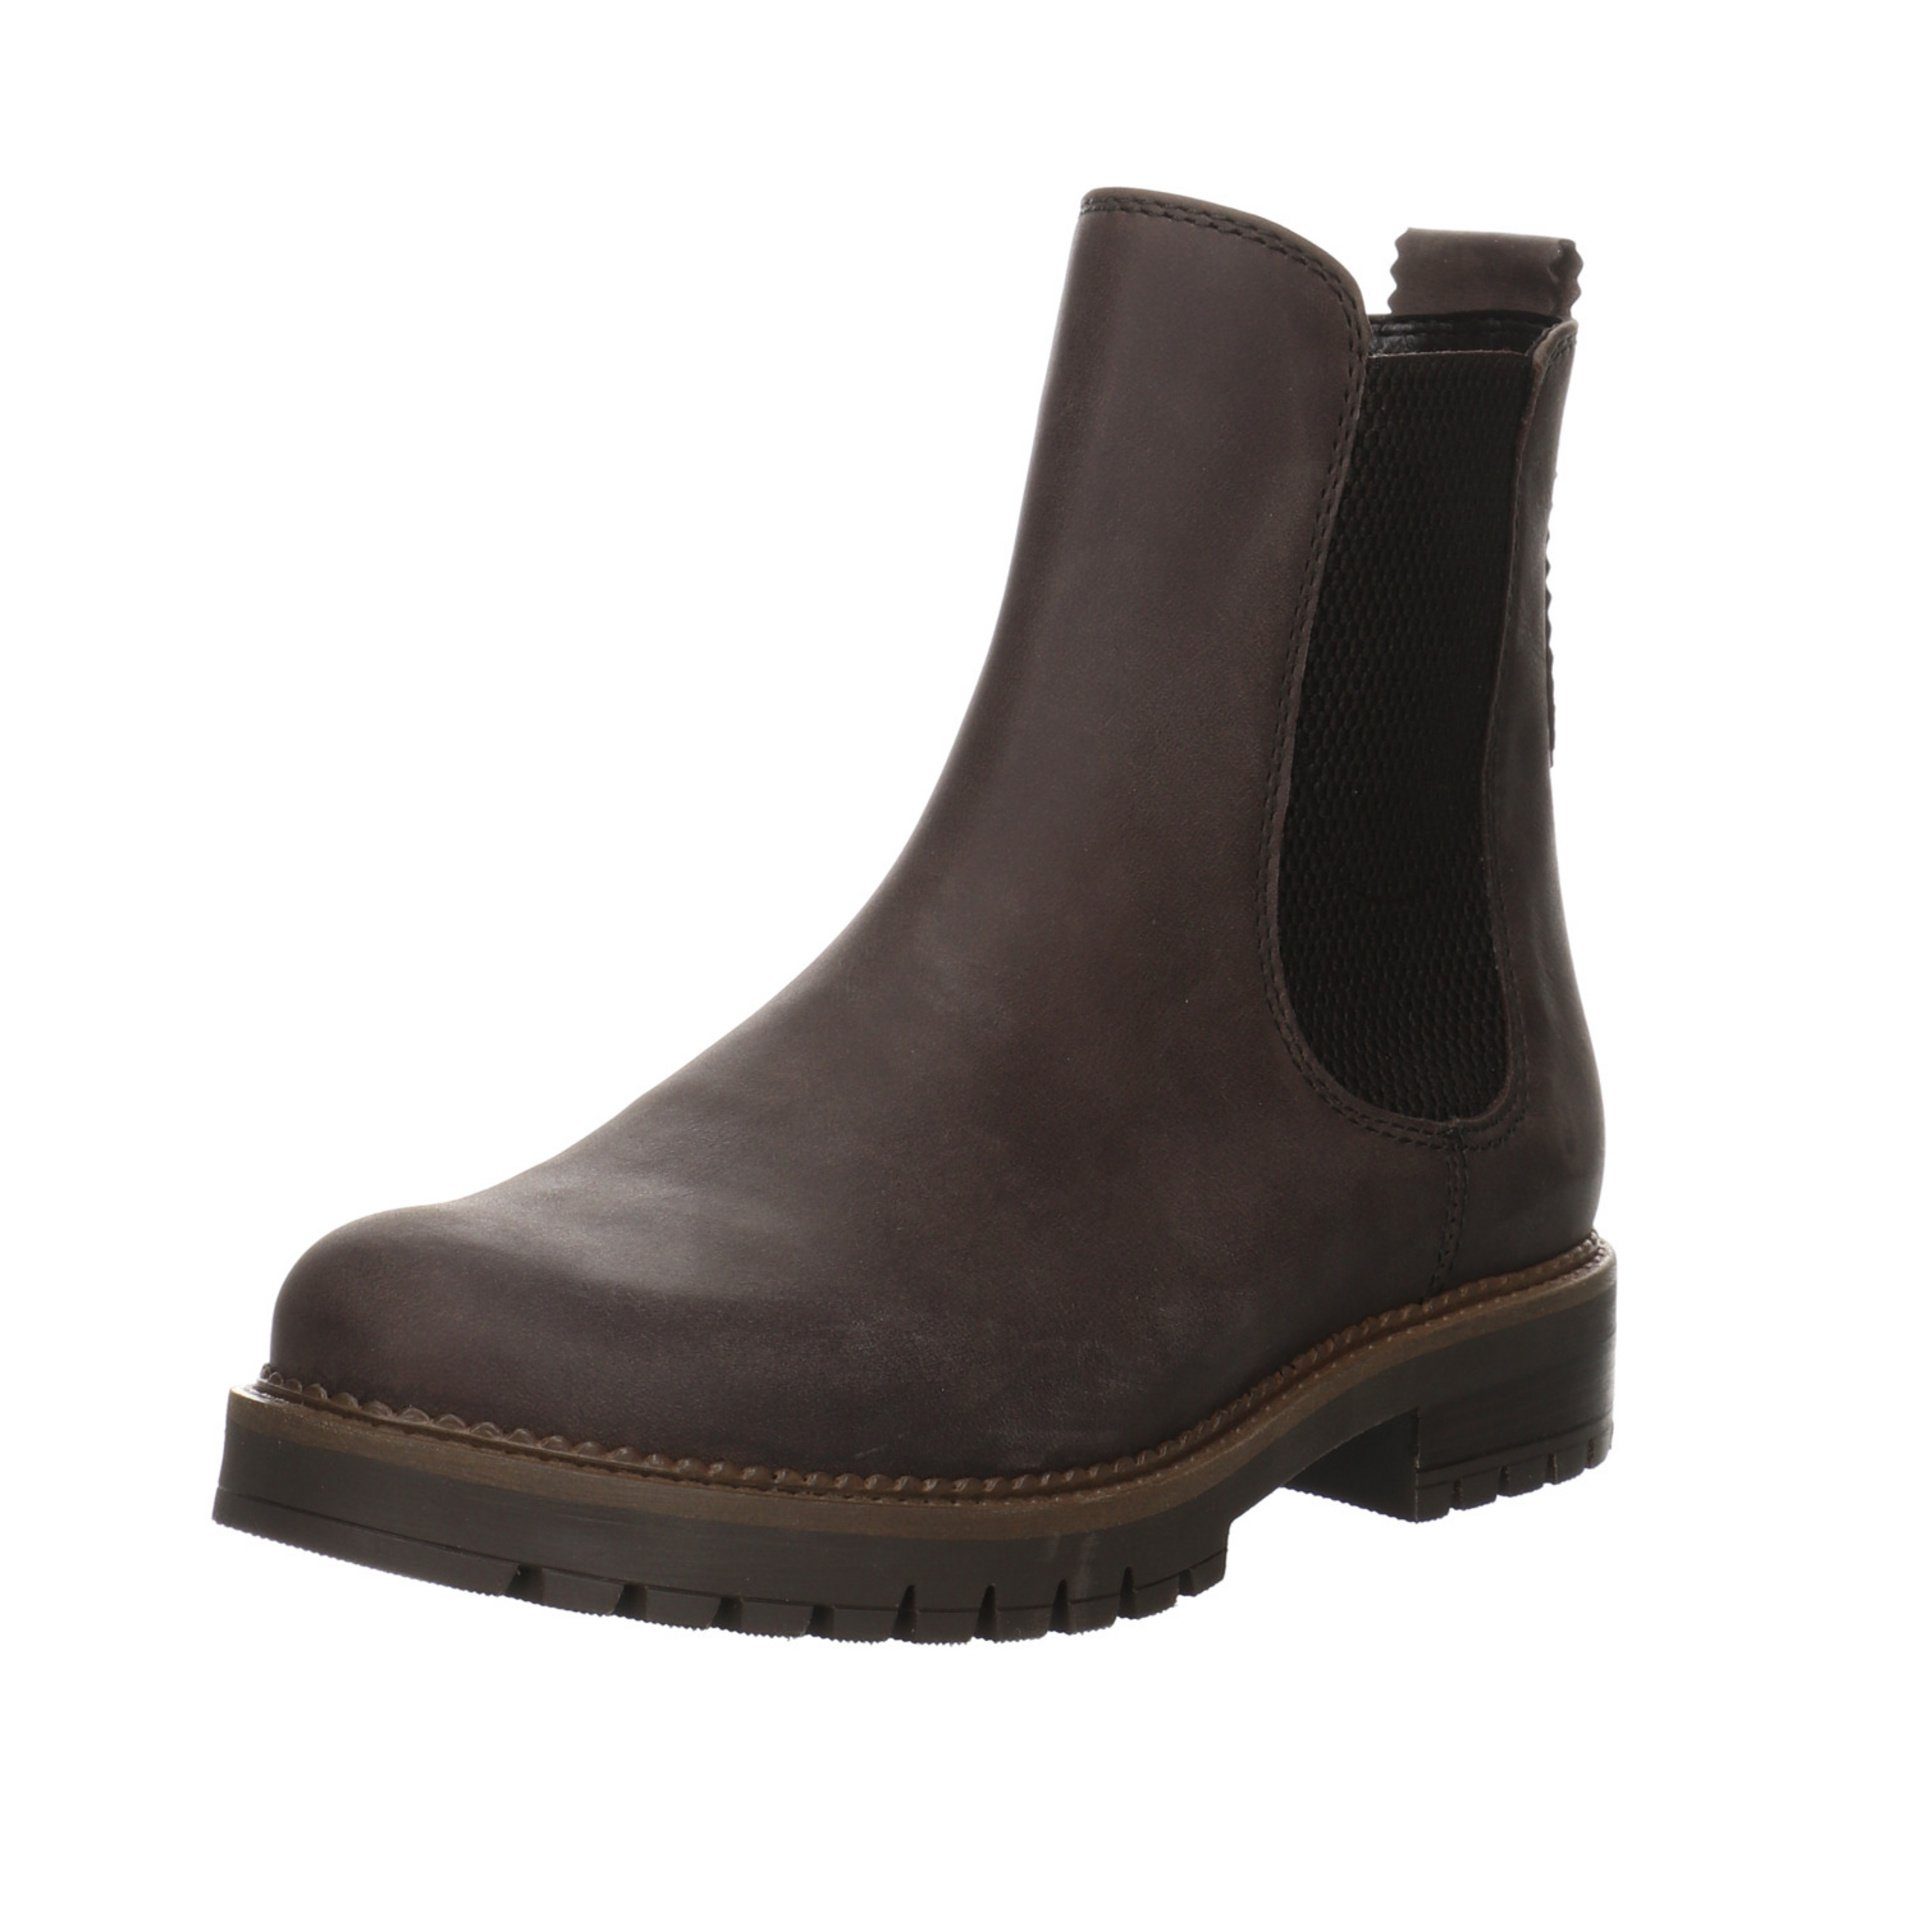 Gabor Damen Stiefel Schuhe Chelsea-Boots Stiefel Leder-/Textilkombination Braun (espresso)